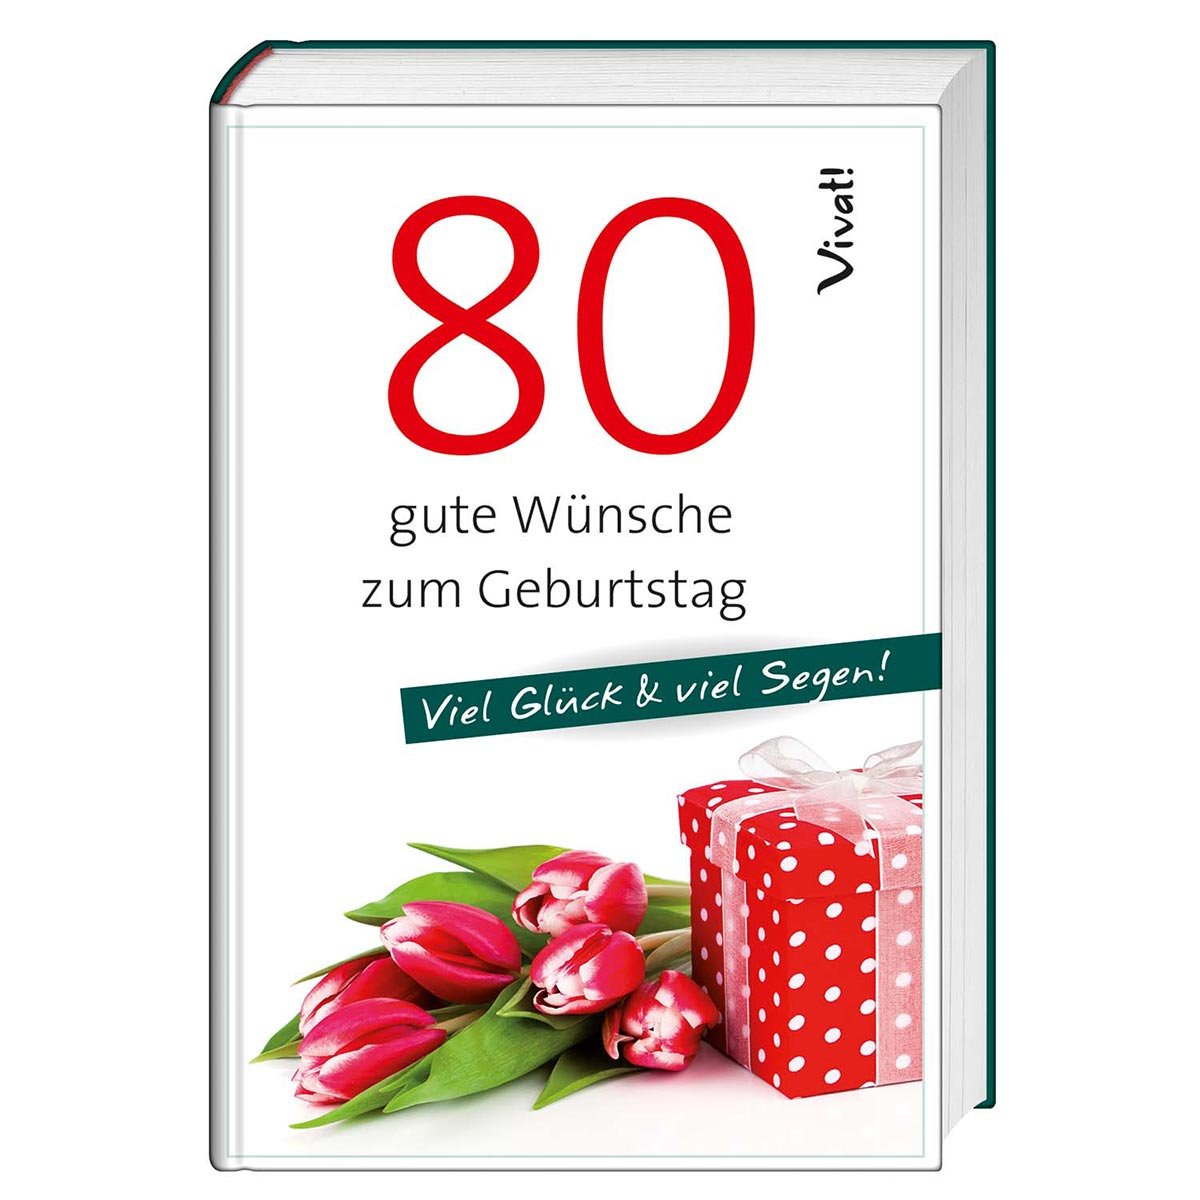 Geschenkbuch »80 gute Wünsche zum Geburtstag« - Cover